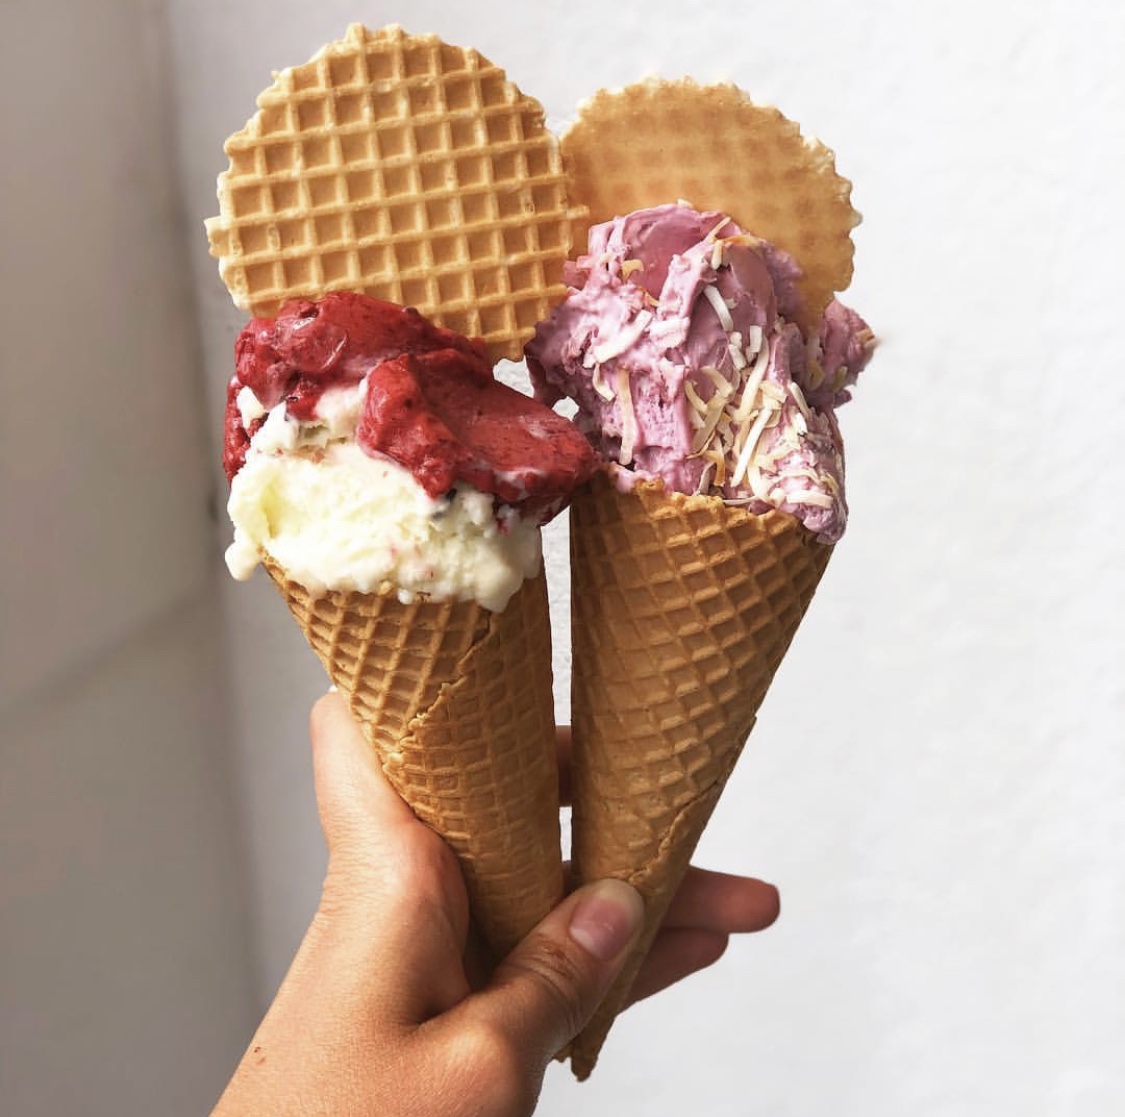 Little Lato Berry Ice cream on a cone